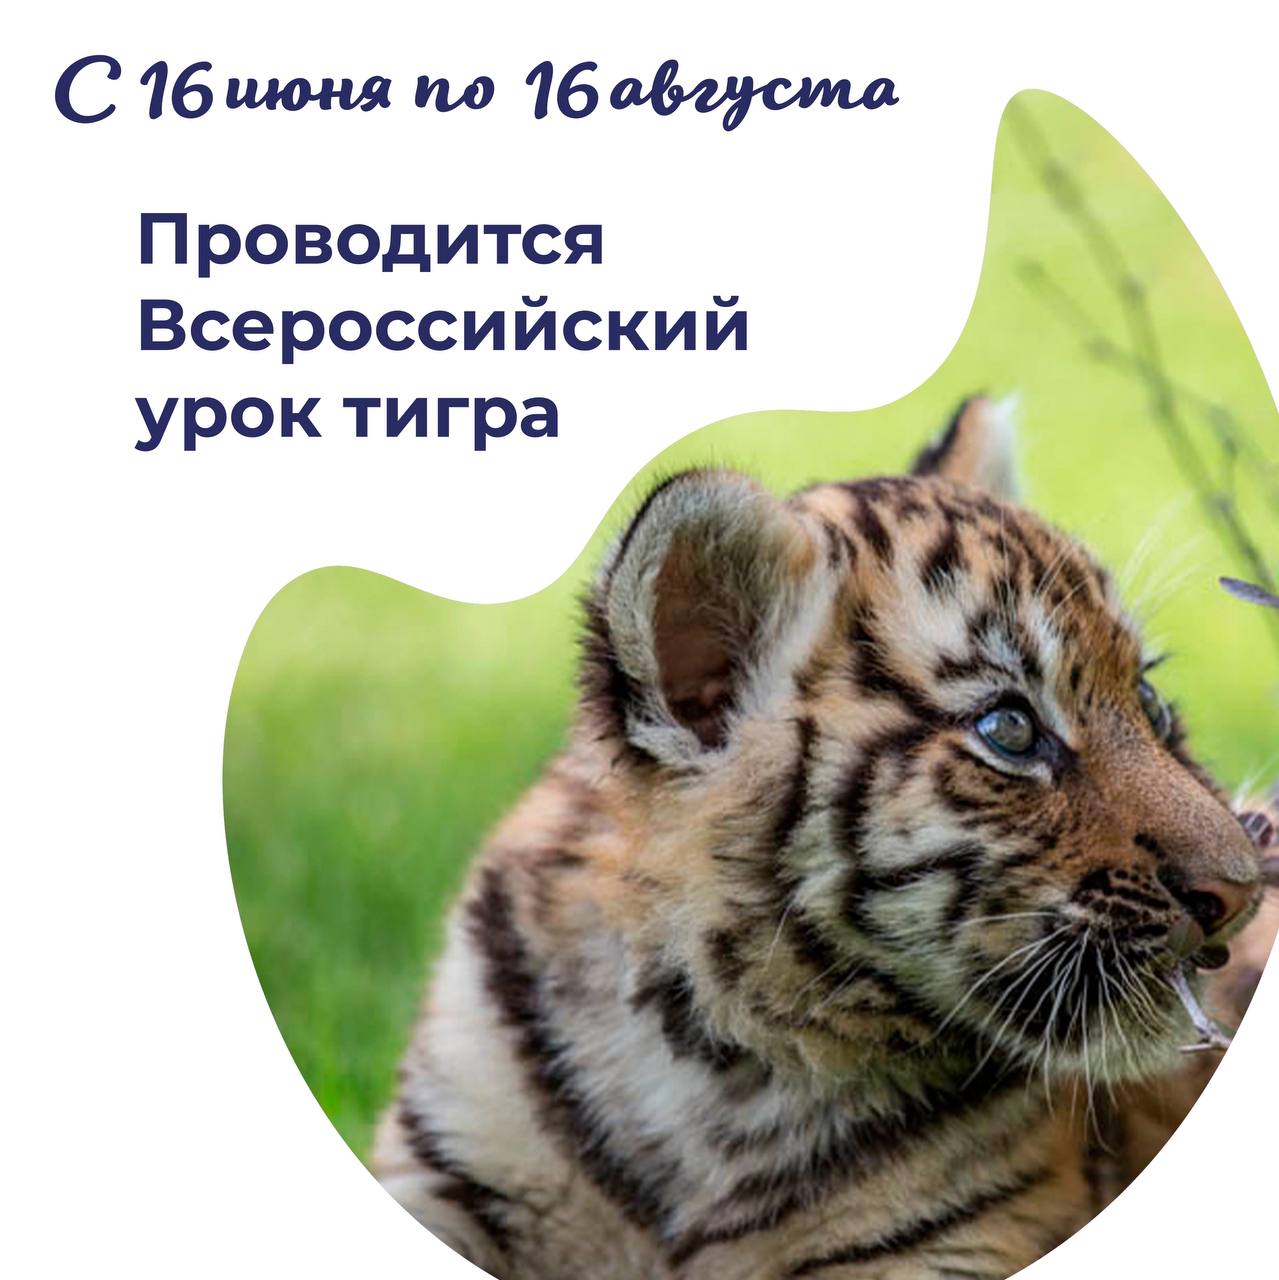 Всероссийский урок тигра..